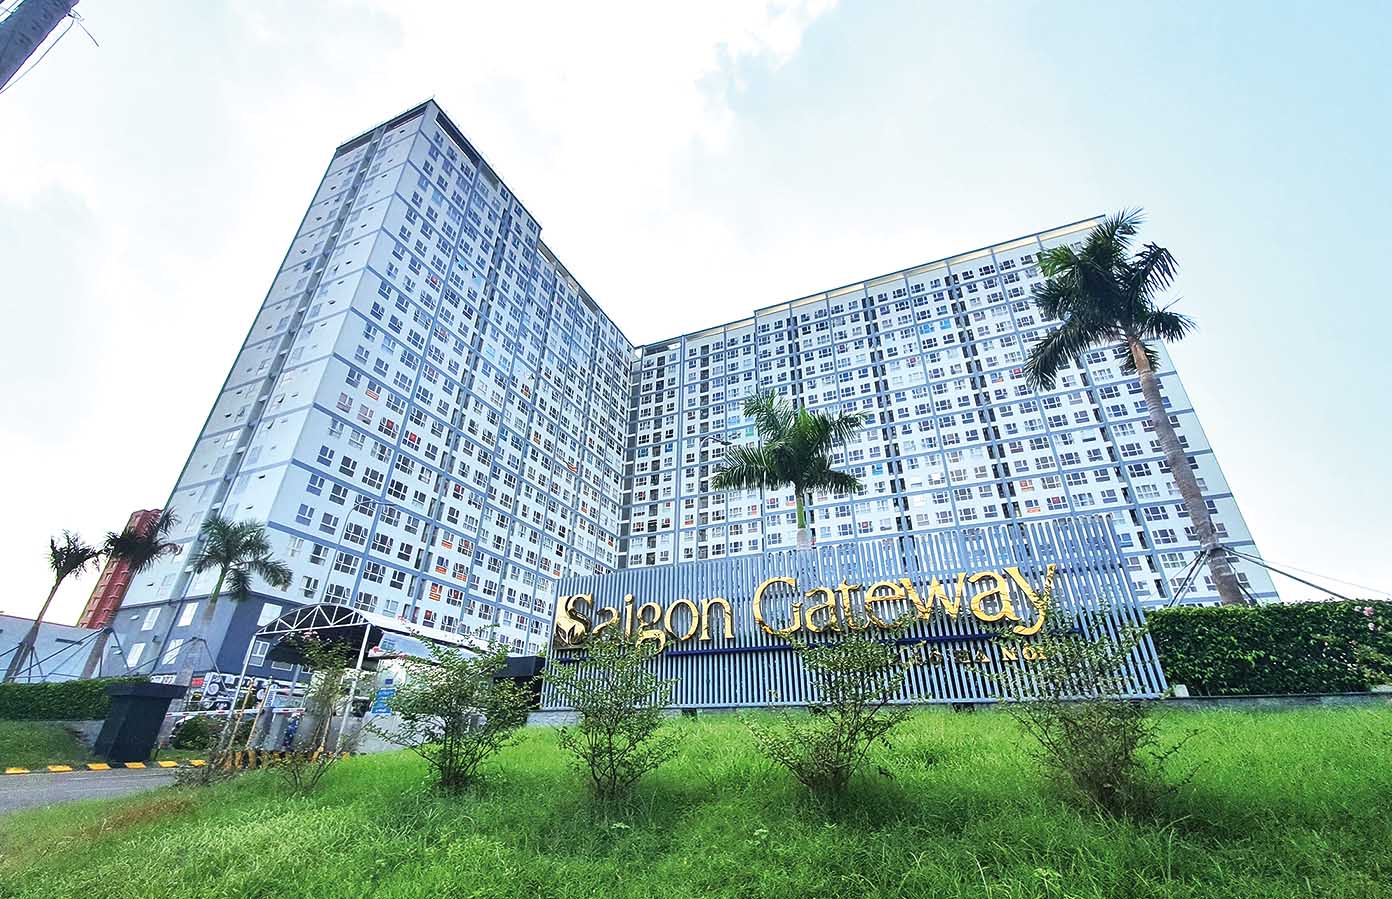 Chung cư Saigon Gateway - một trong những điểm nóng tranh chấp giữa chủ đầu tư và người dân liên quan đến sổ hồng  	Ảnh: Trọng Tín